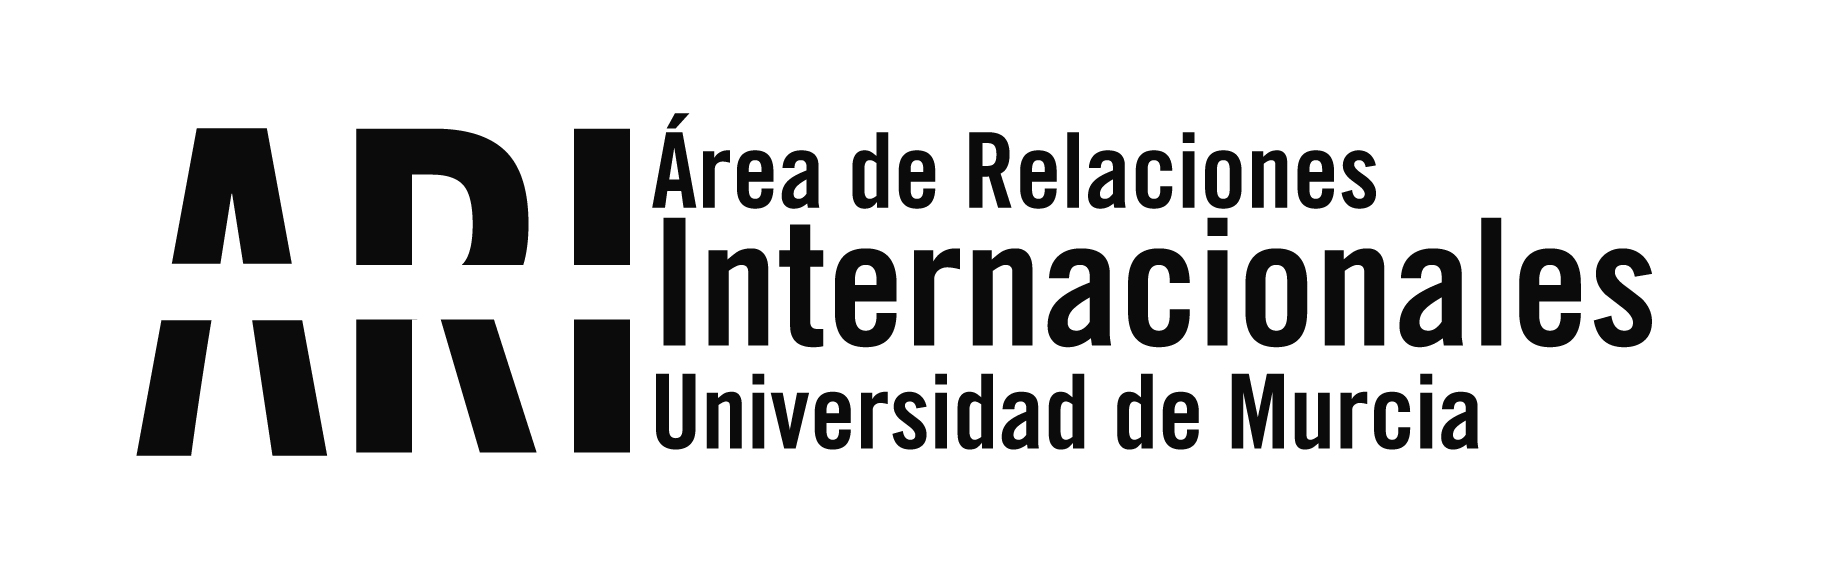 Courses - Área de Relaciones Internacionales